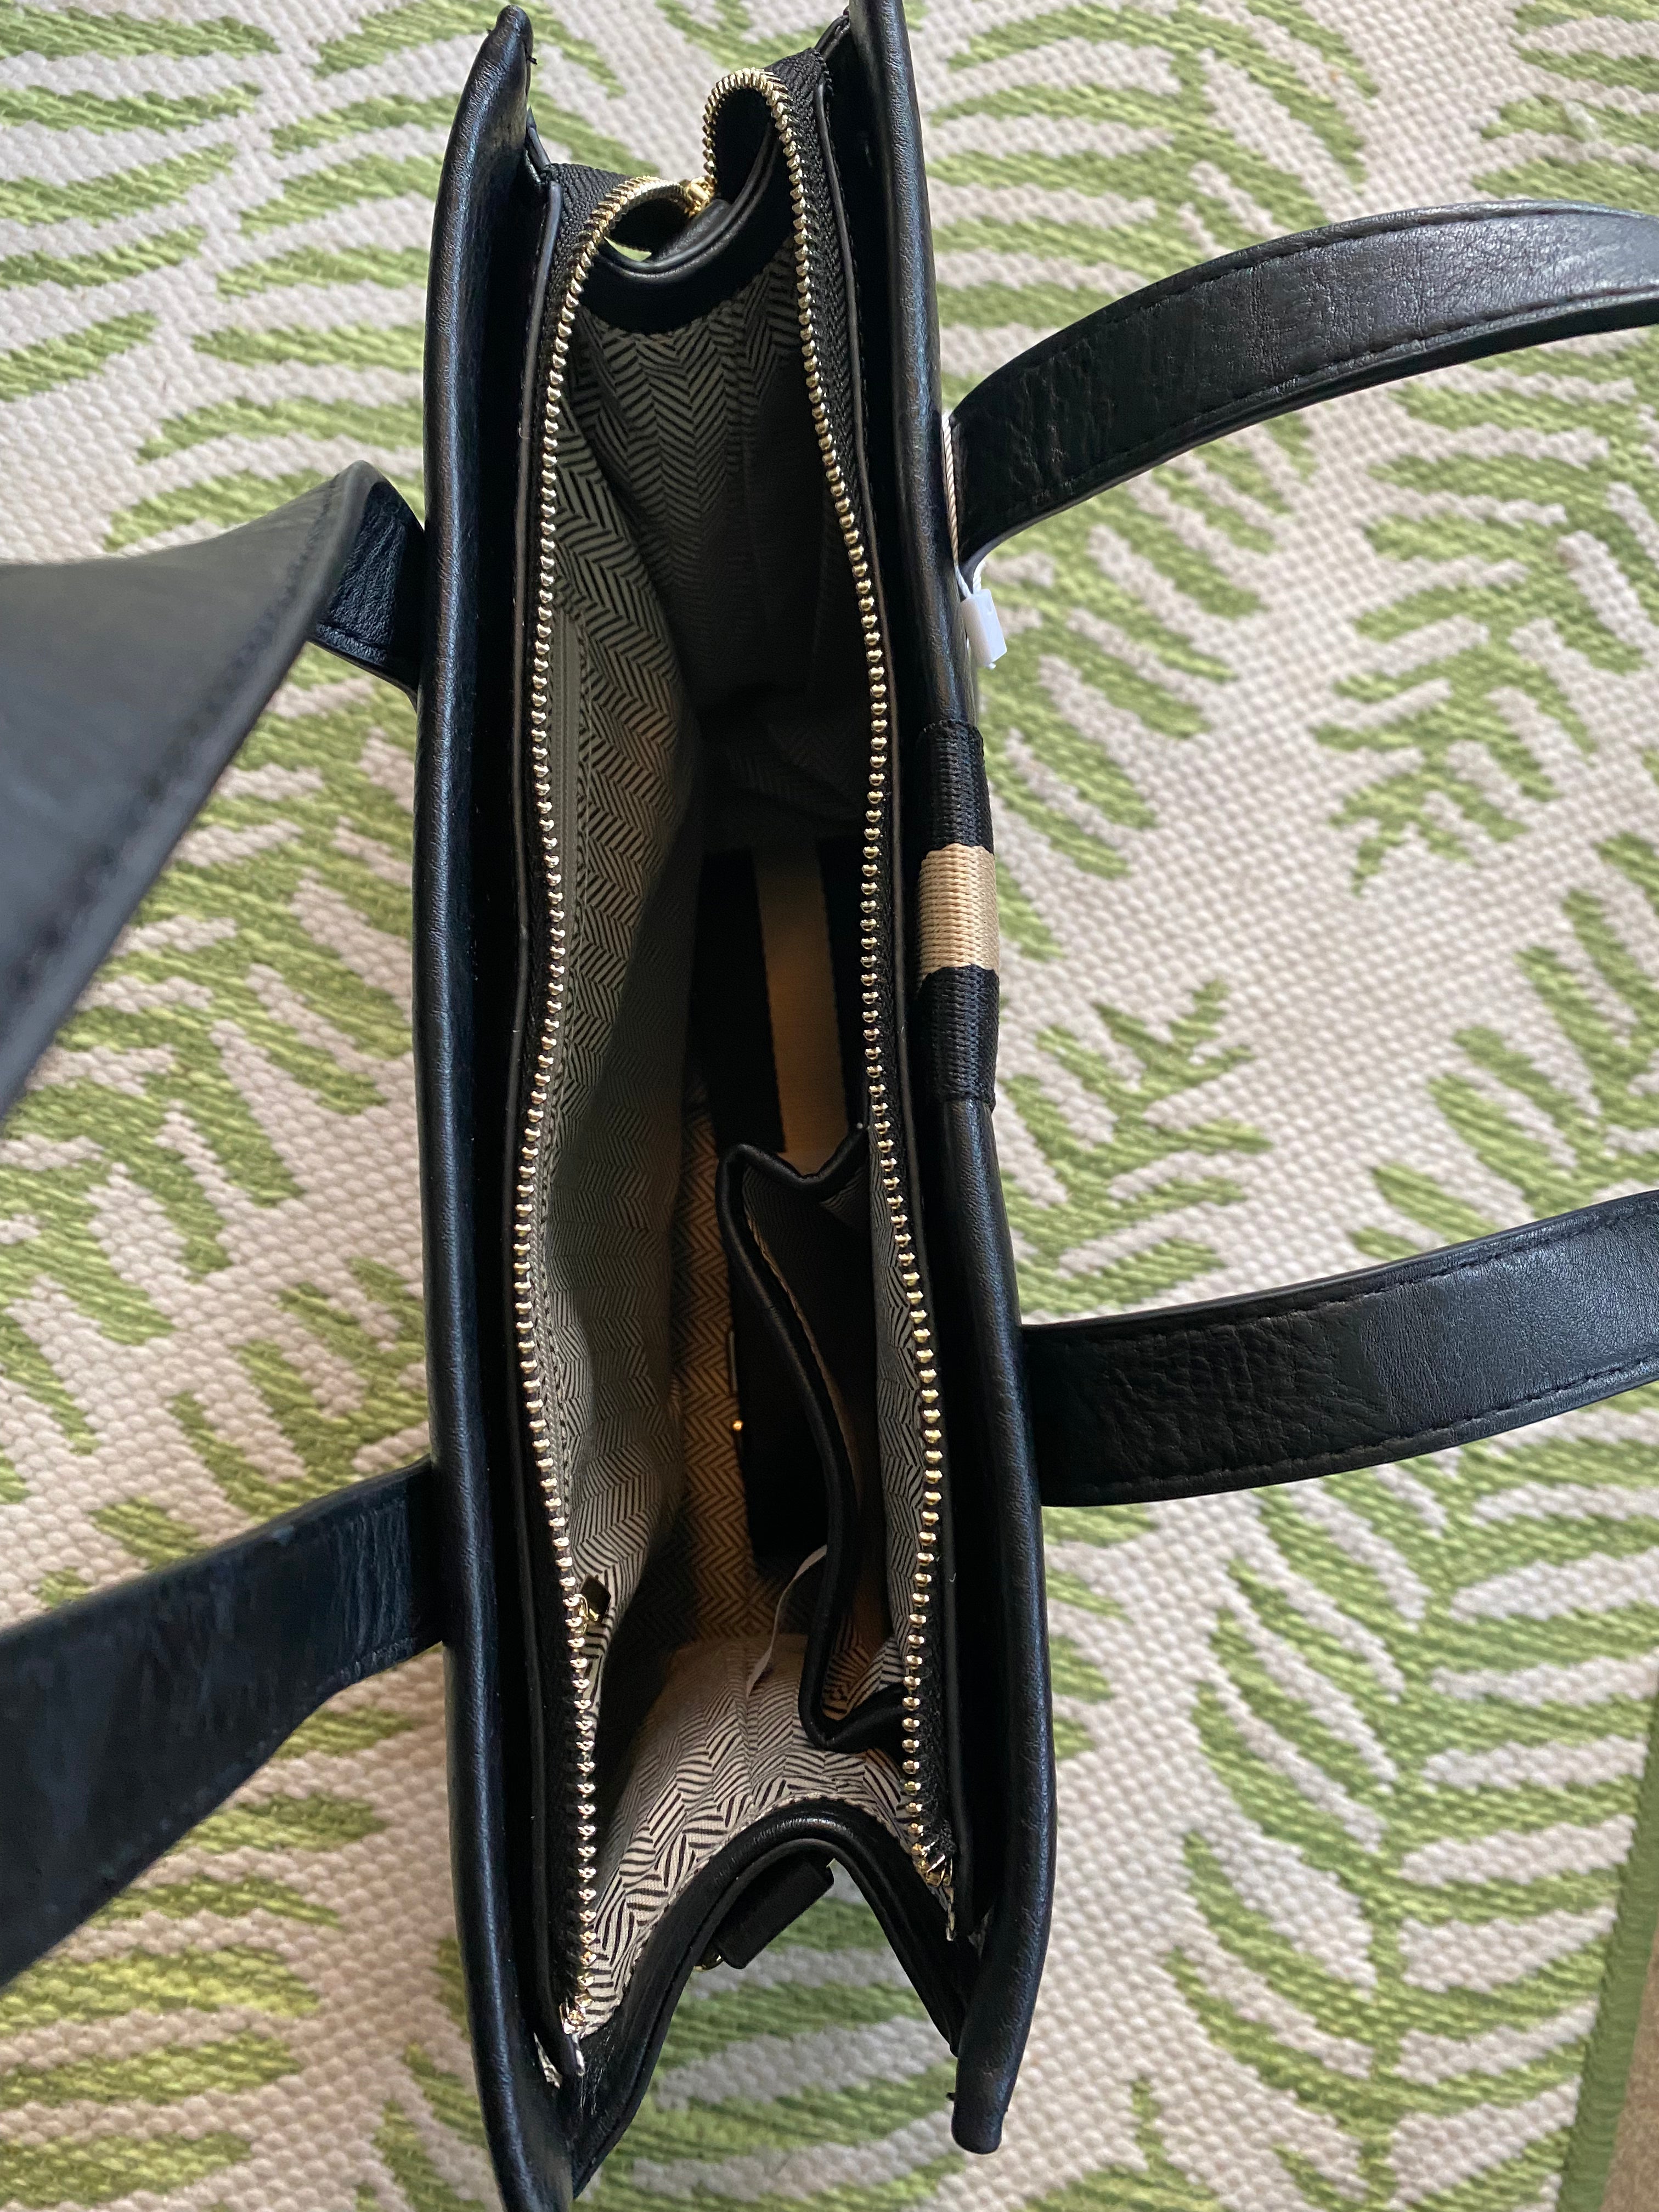 Striped purse